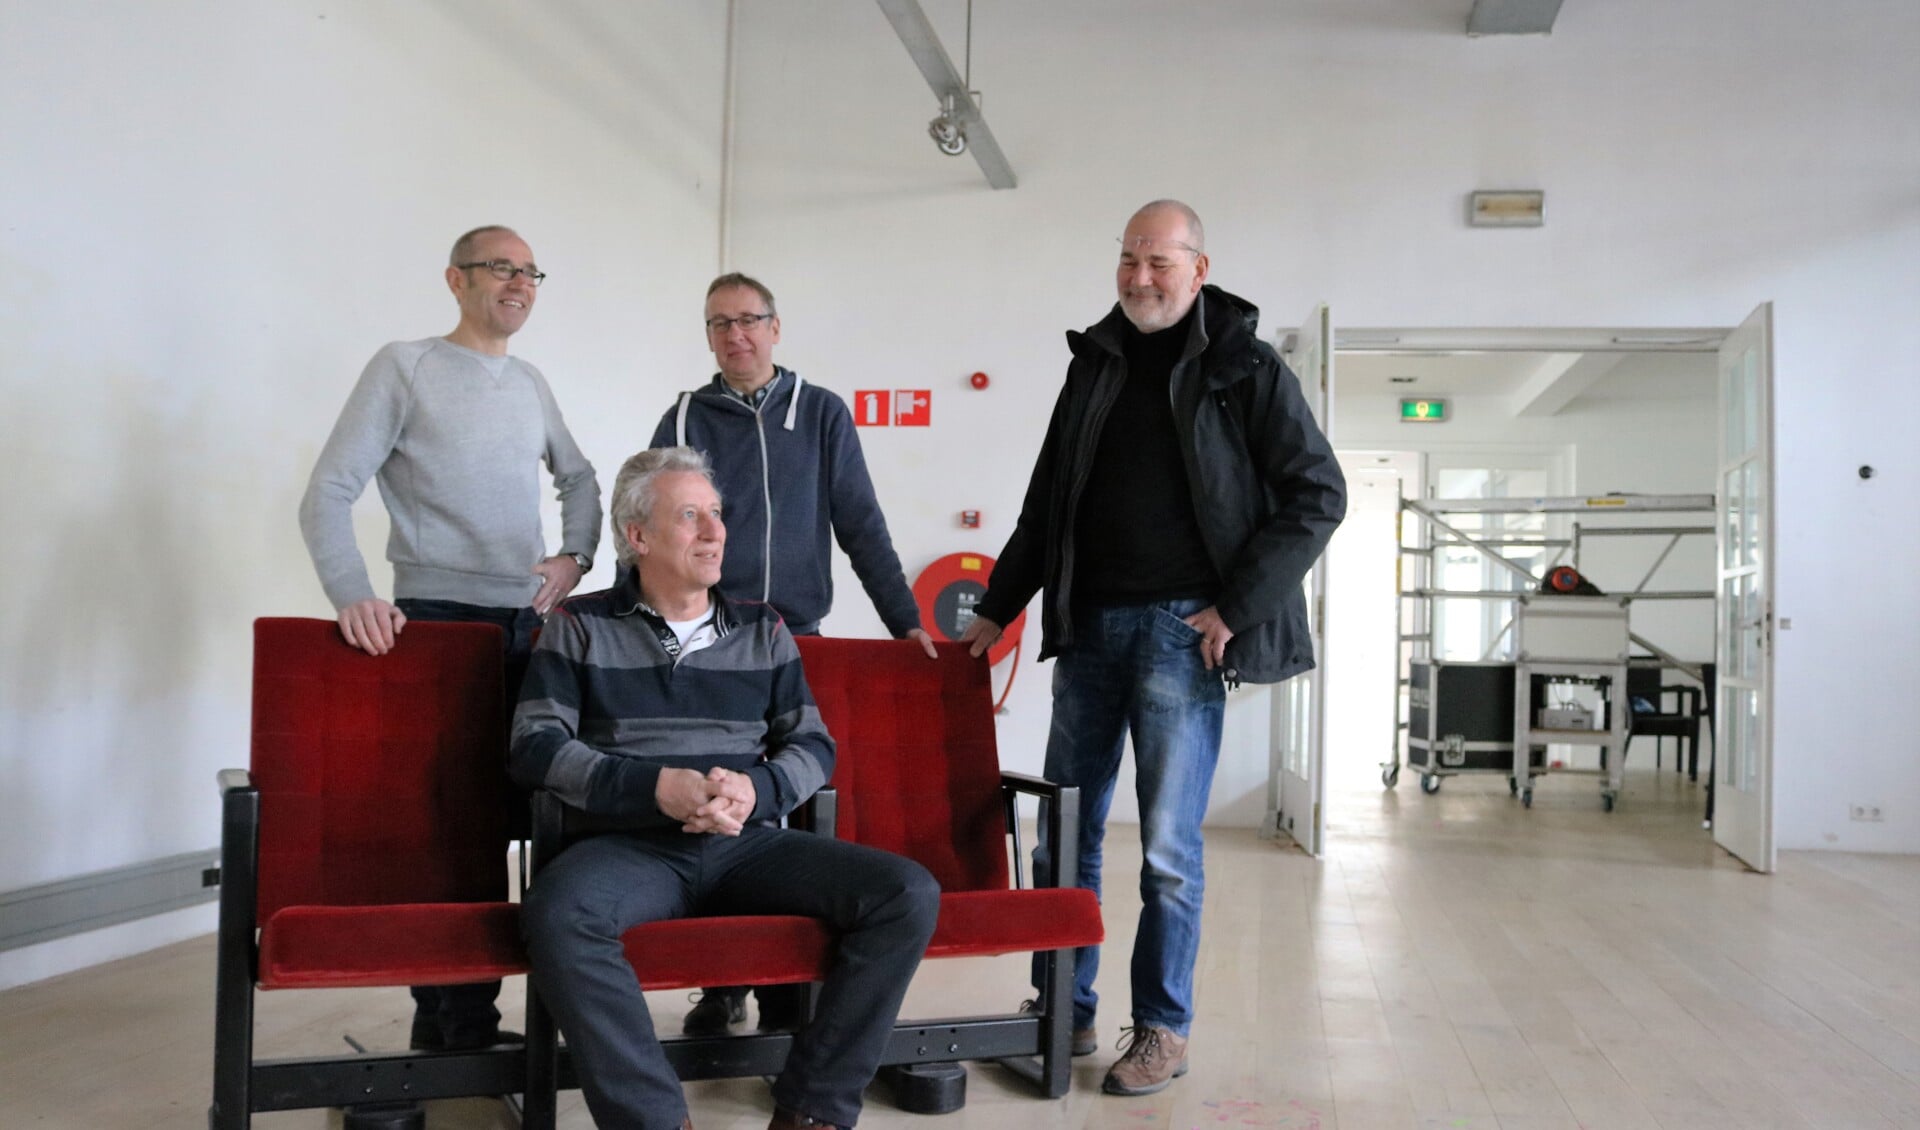 V.l.n.r.: René van Wilderen (operator), Tom Luijckx (penningmeester), Henk Ruijs (PR) en Maarten Slooves, voorzitter filmcafé Grave.